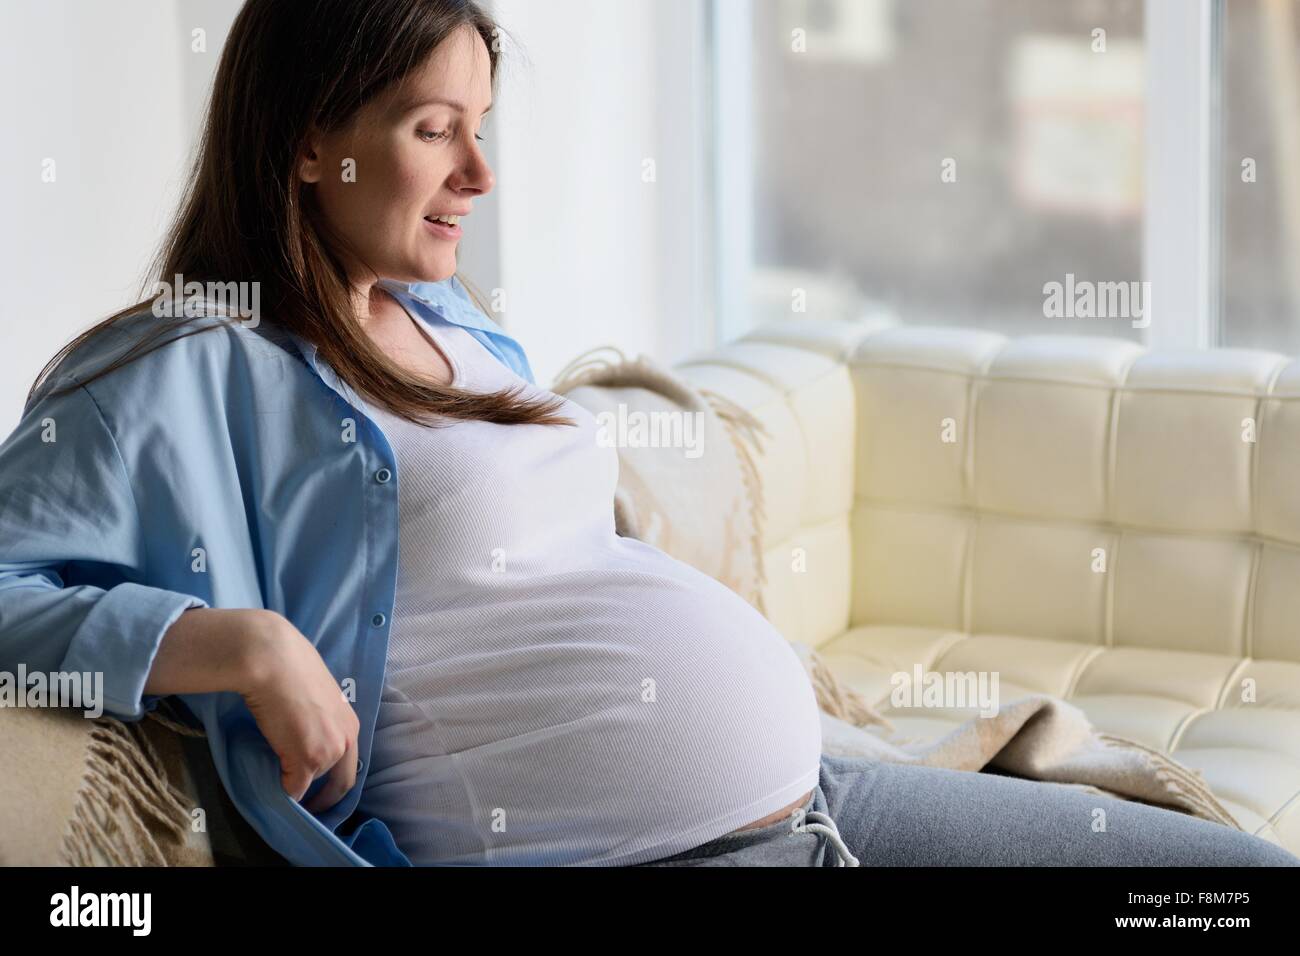 Pregnant woman sitting on sofa Stock Photo